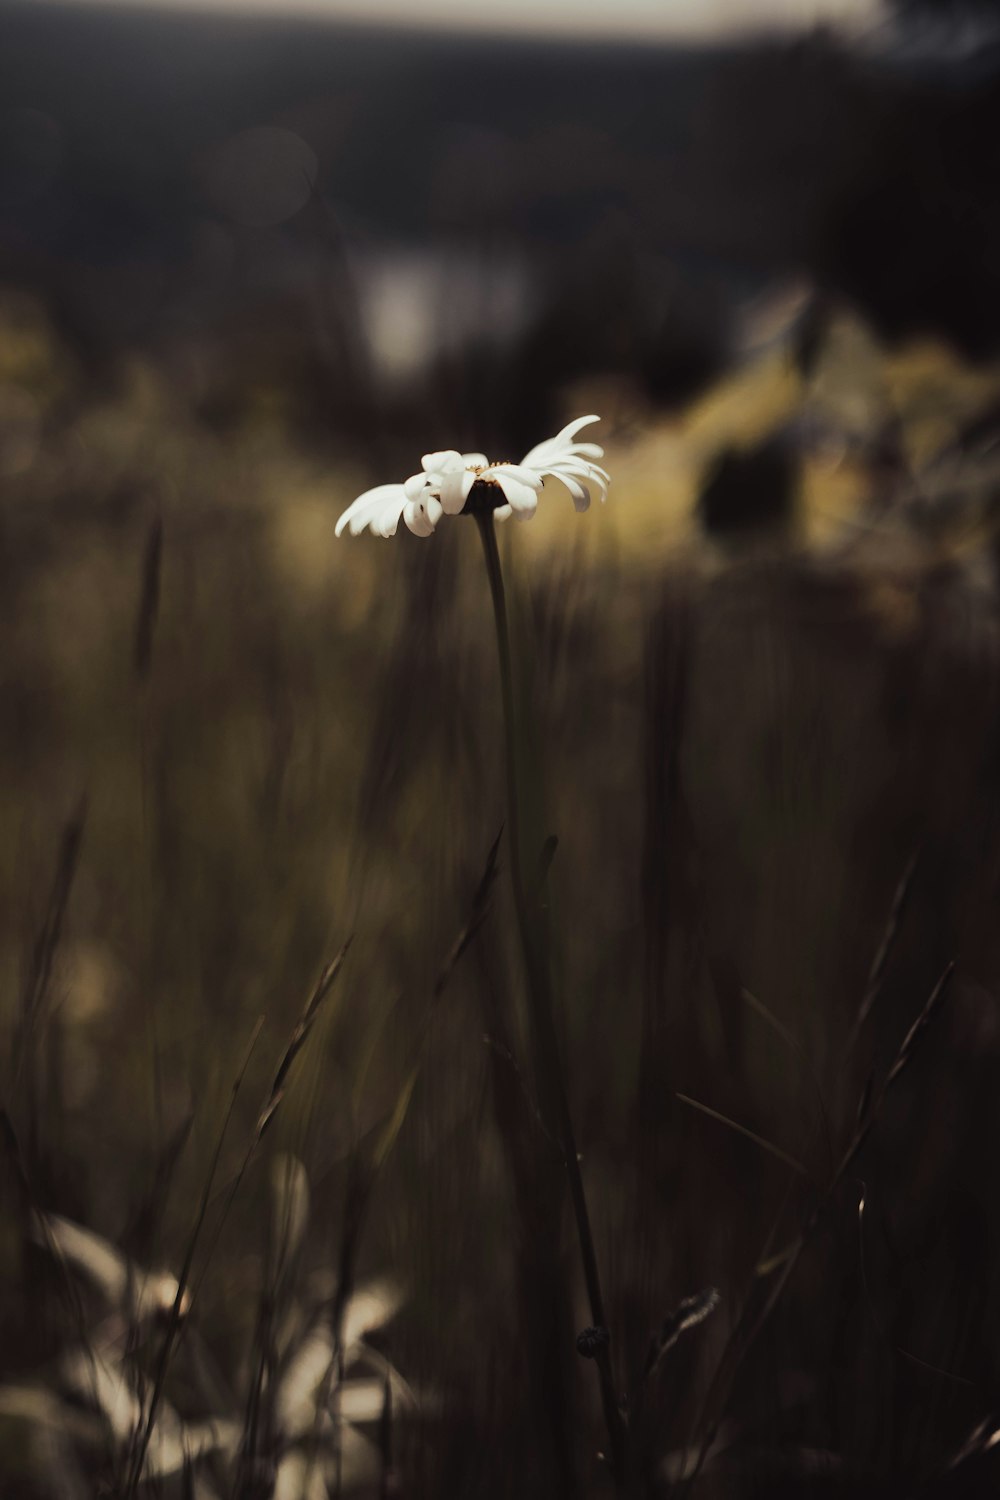 a single white flower in a grassy field